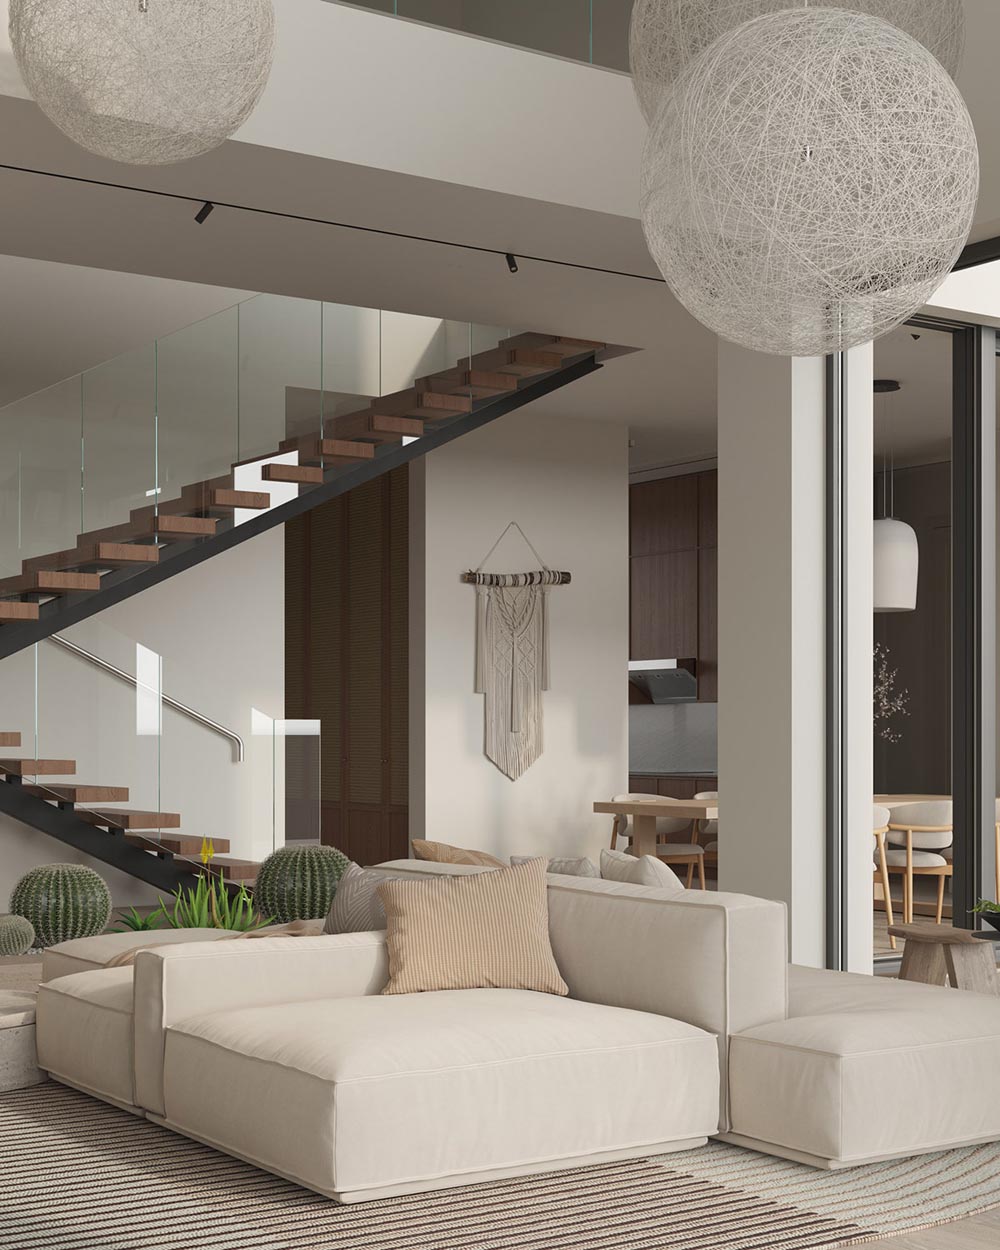 Modern Villa Interior With A Warm Essence - Design Swan